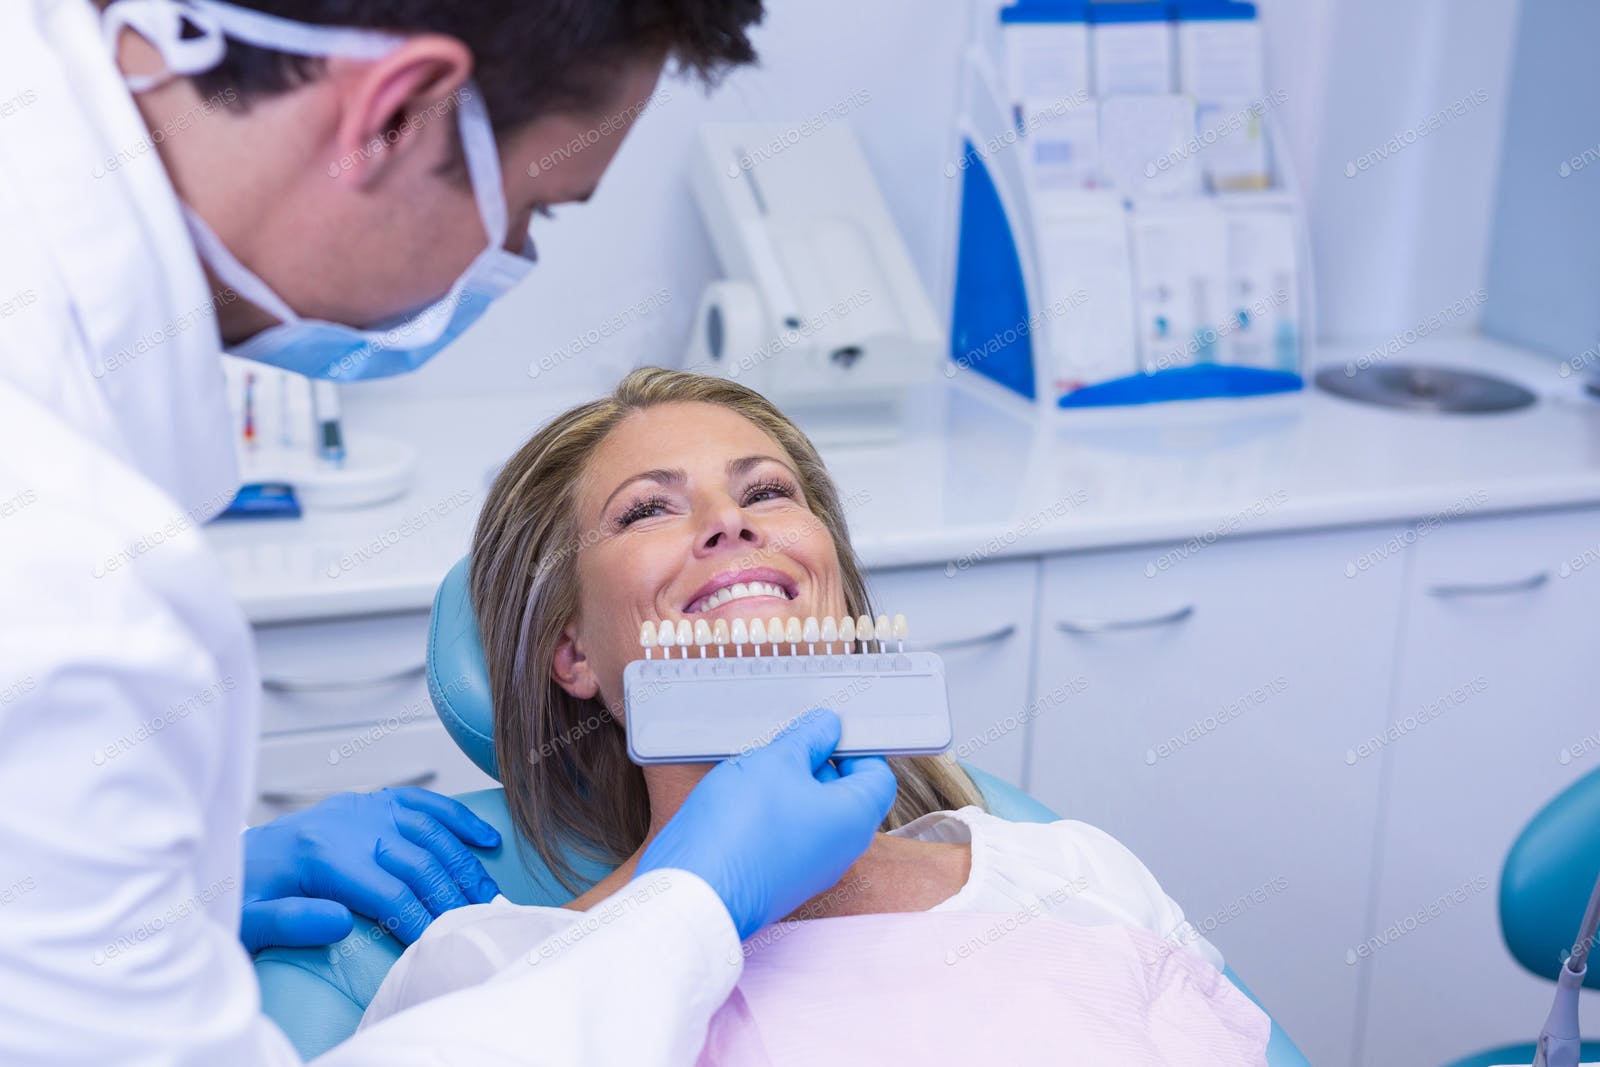 Гнилые зубы: последствия для организма, почему гниют зубы от десны под корень и что делать